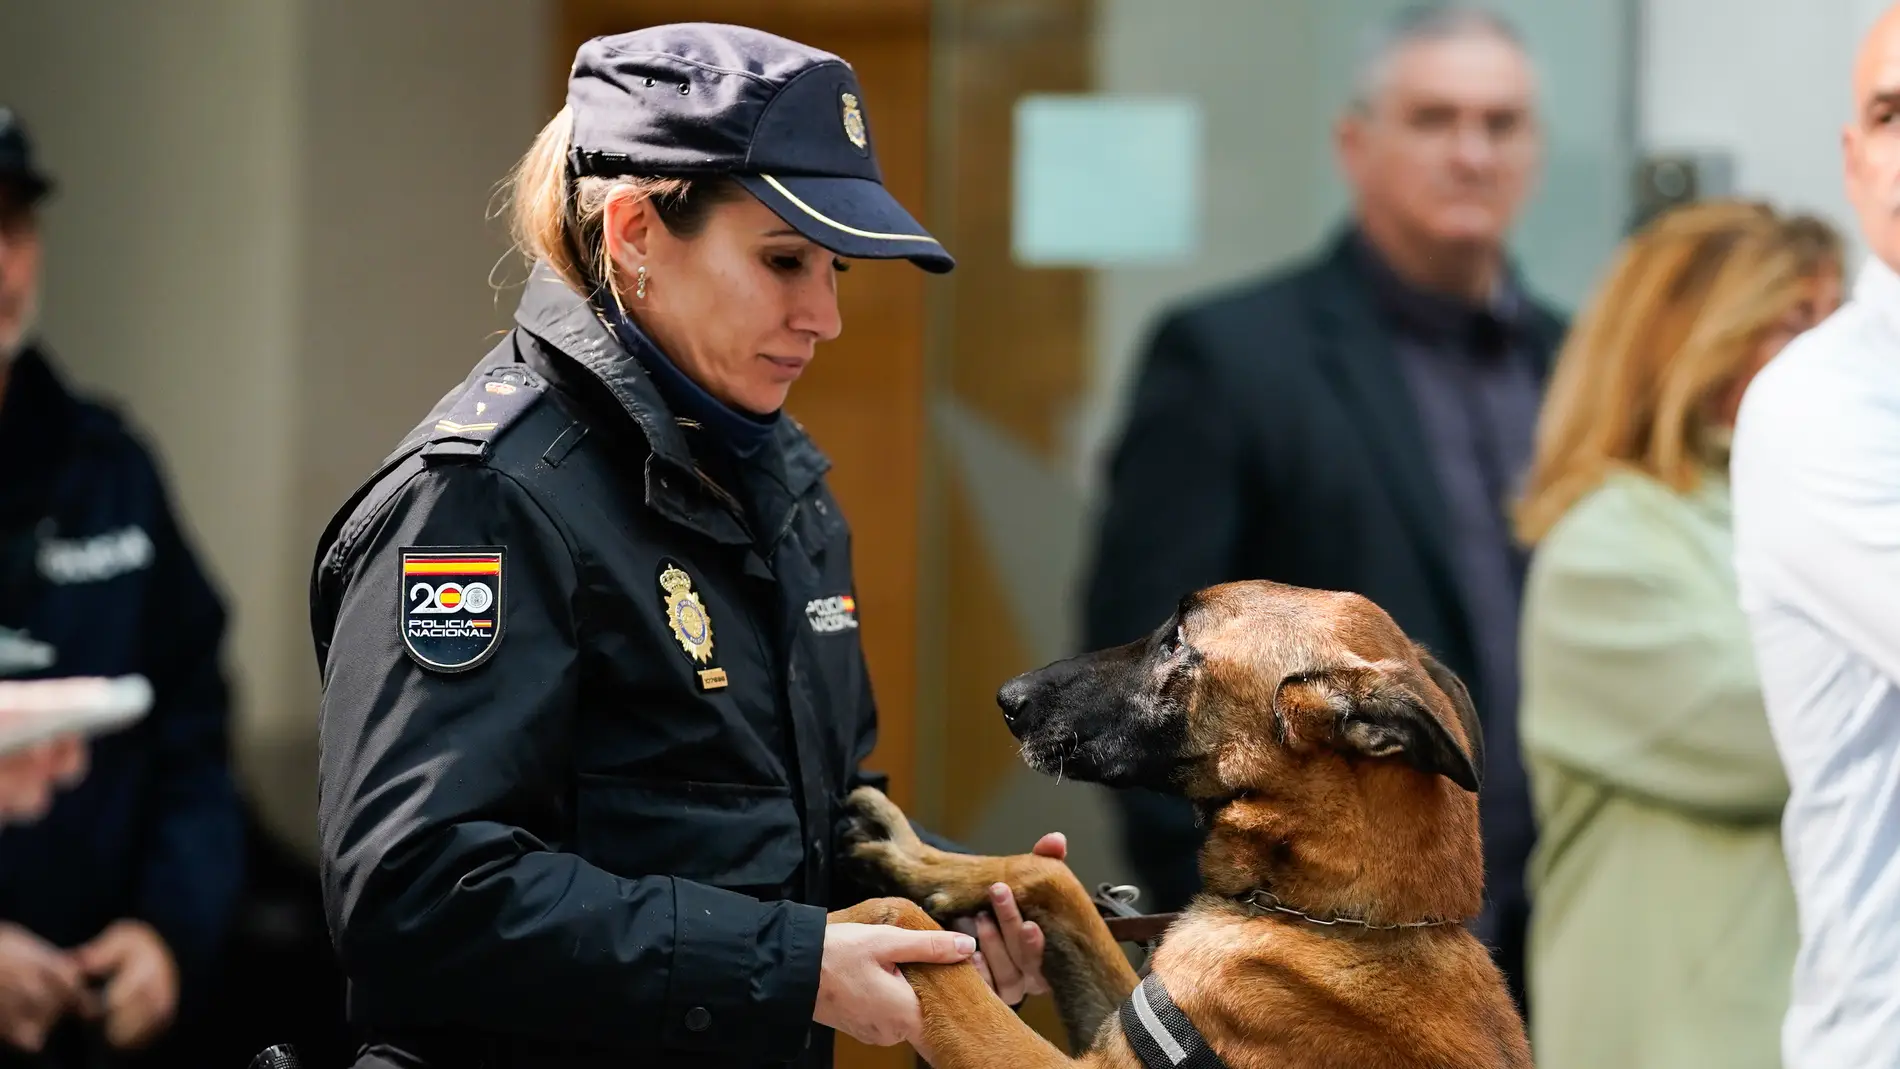 Héroes de cuatro patas: perros policía que buscan un hogar